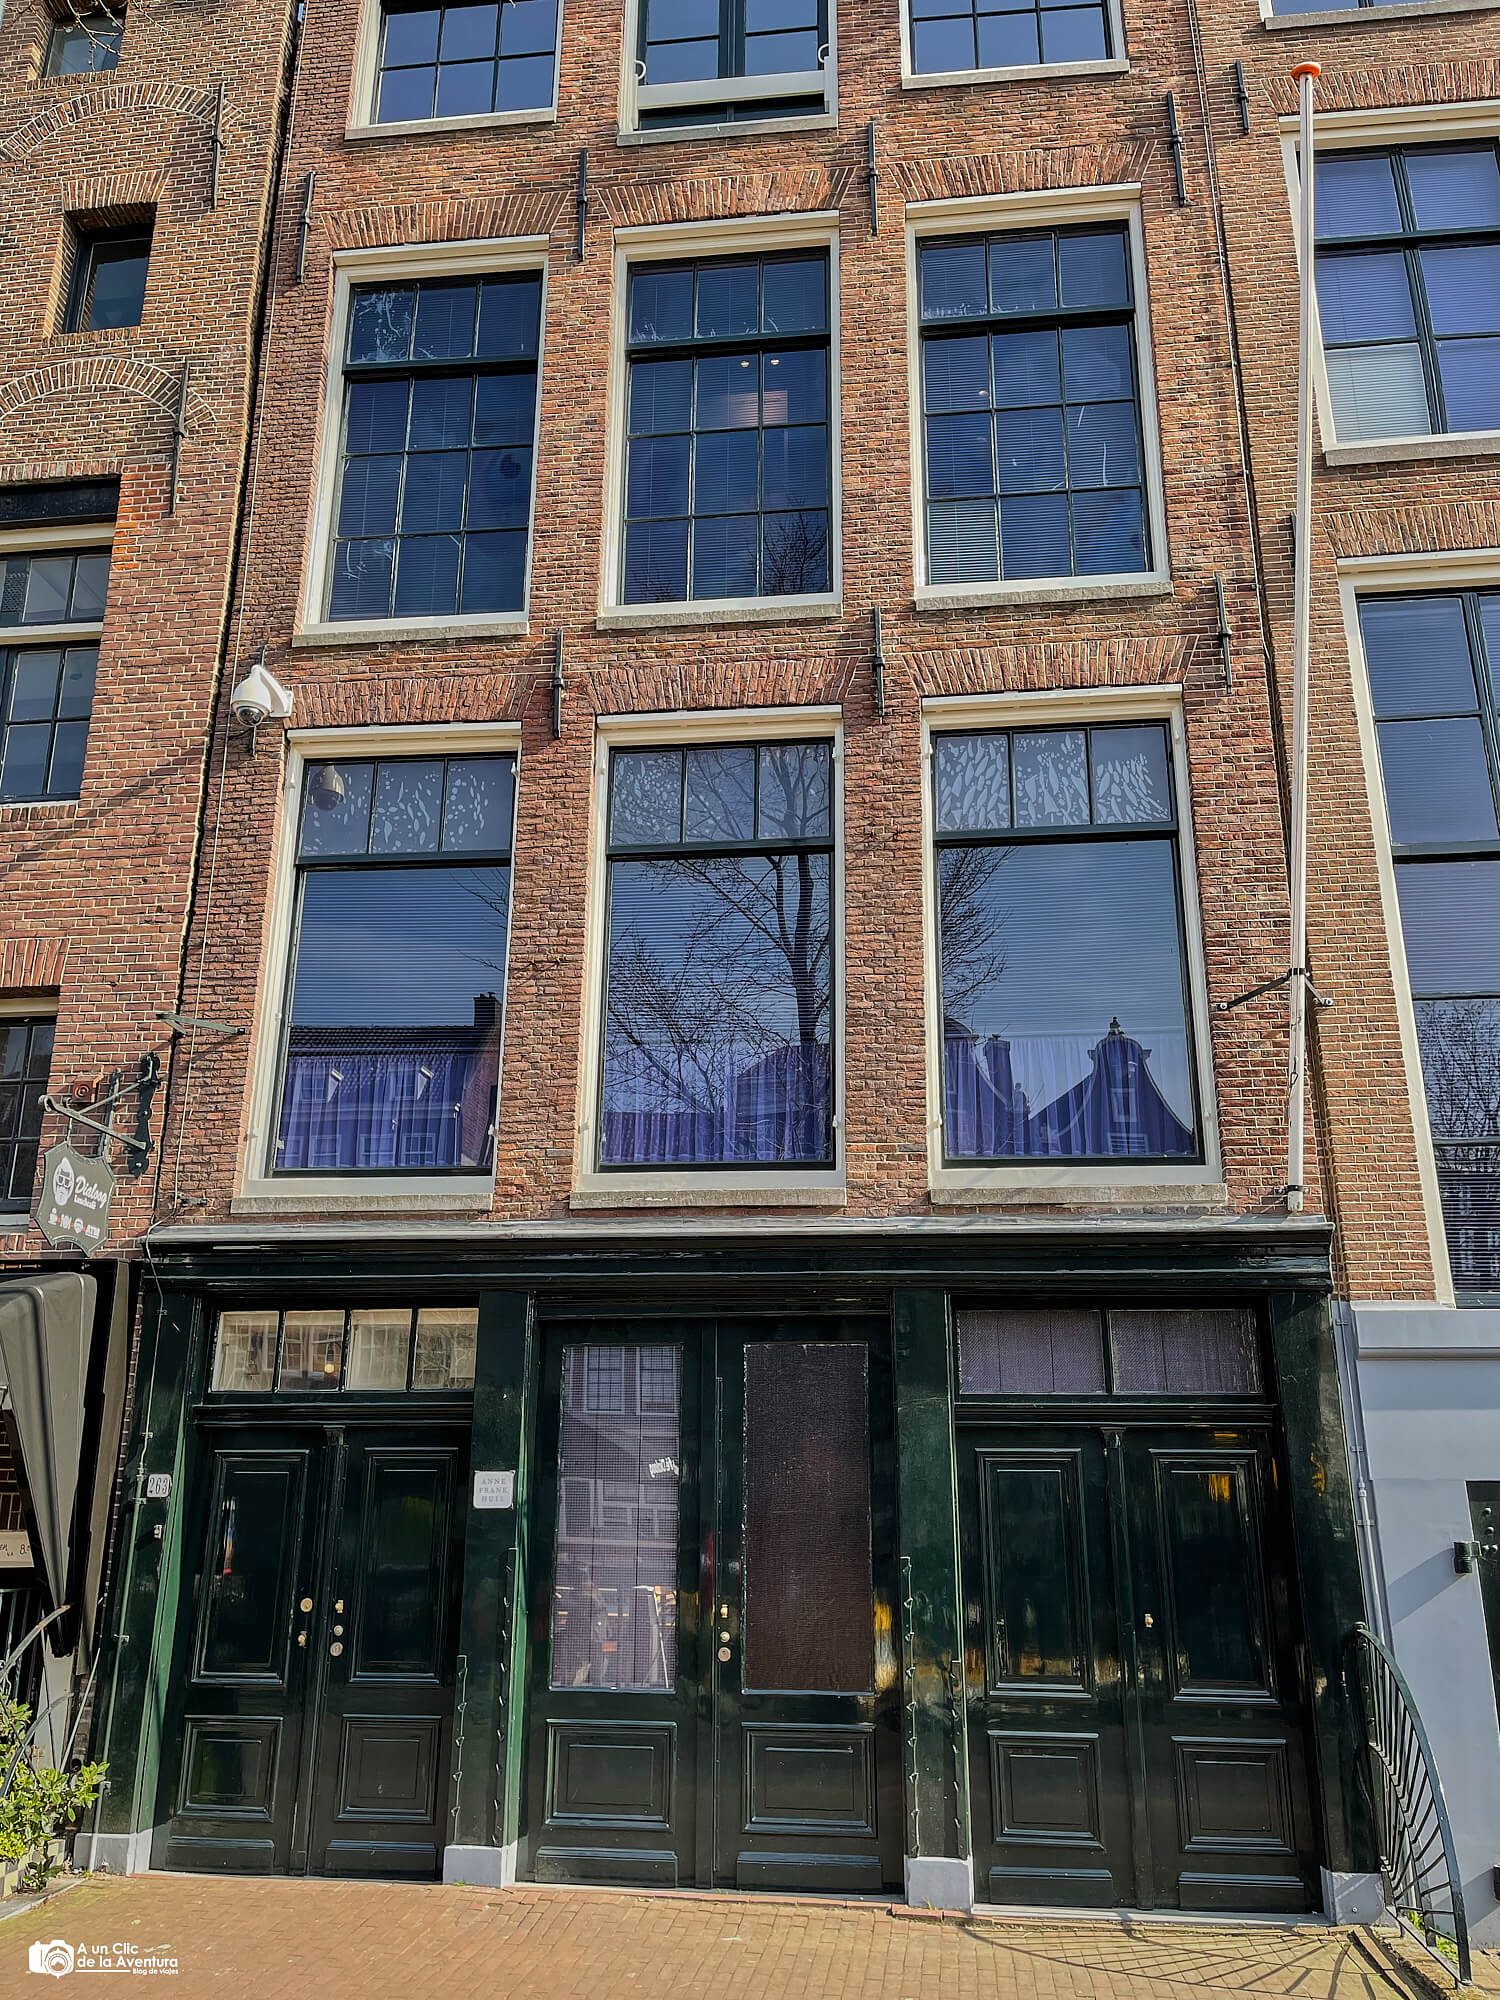 Casa de Ana Frank, que ver en Amsterdam